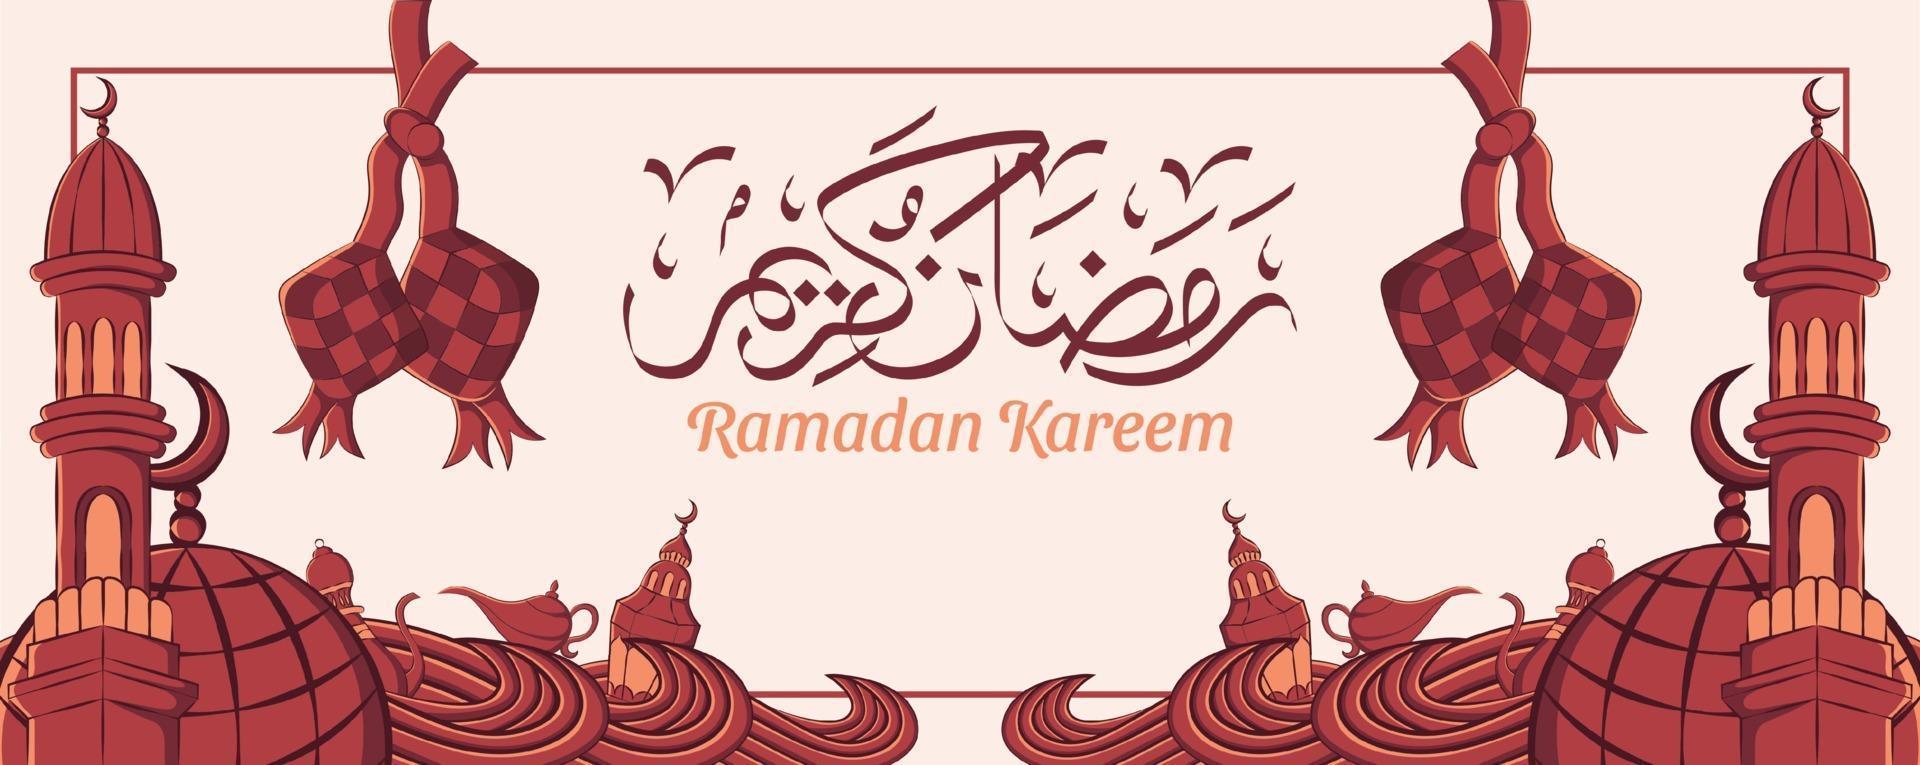 bannière de ramadan kareem avec ornement illustration islamique dessinés à la main sur fond blanc. vecteur